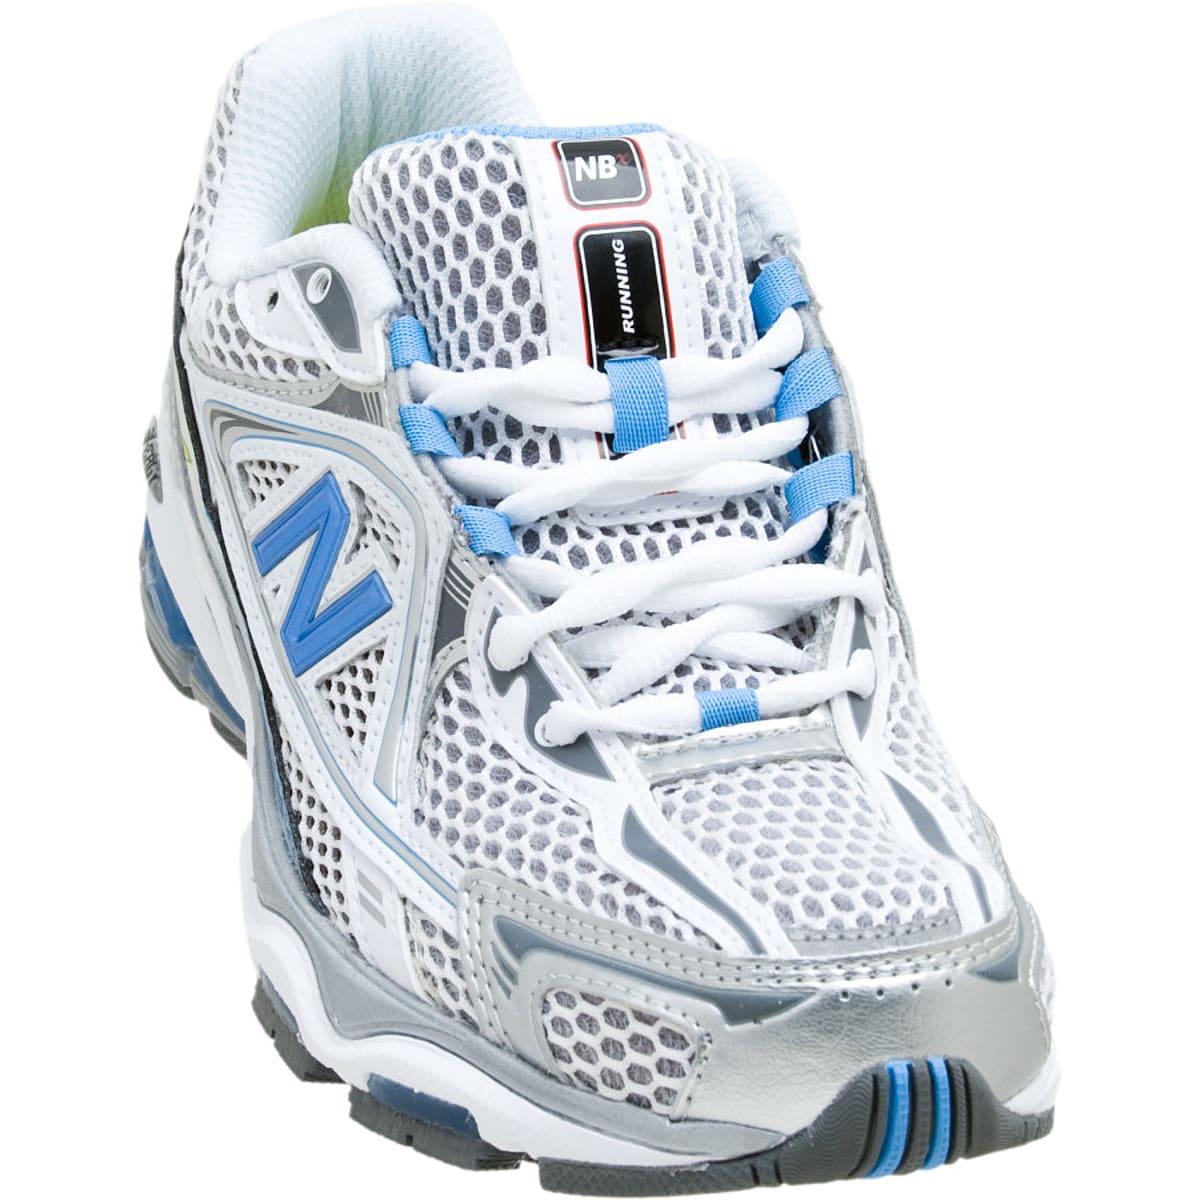 New Balance 1064 Running Shoe - Women's -